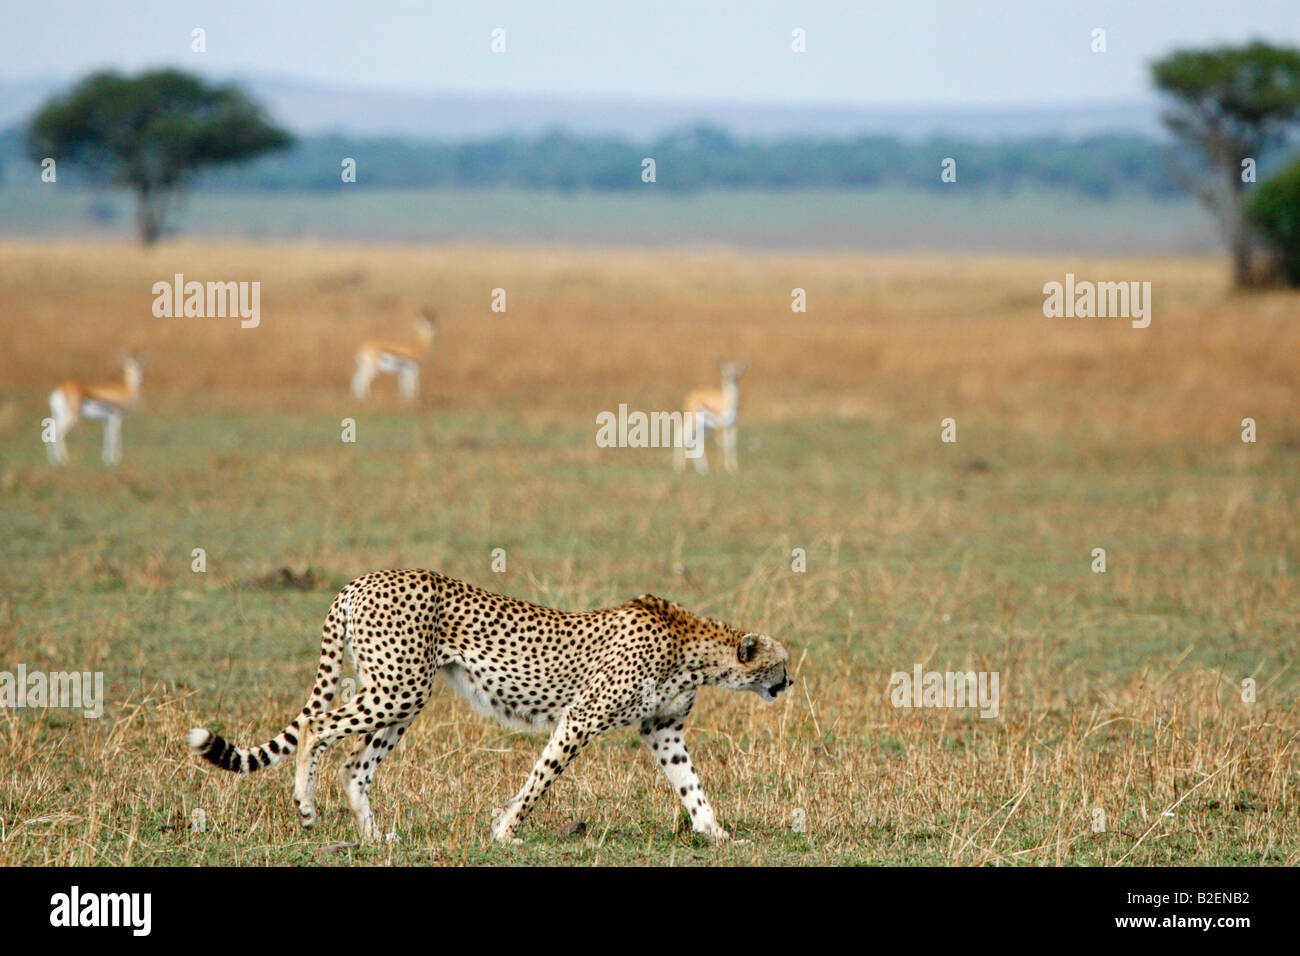 Ein einsamer Gepard, vorbei an einer Herde von Thompsons Gazellen auf eine offene Ebene Stockfoto